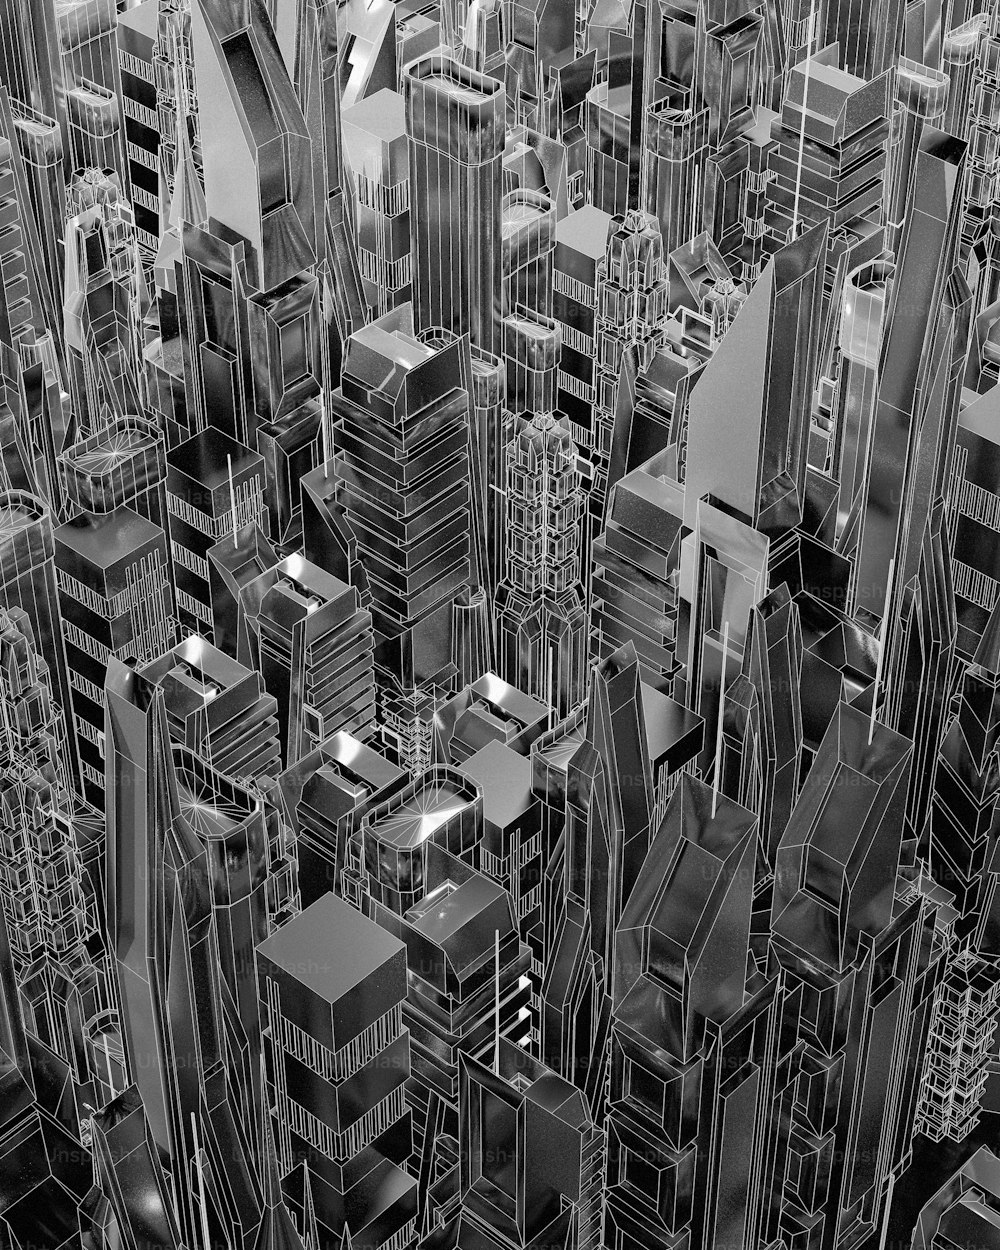 Una foto en blanco y negro de una ciudad